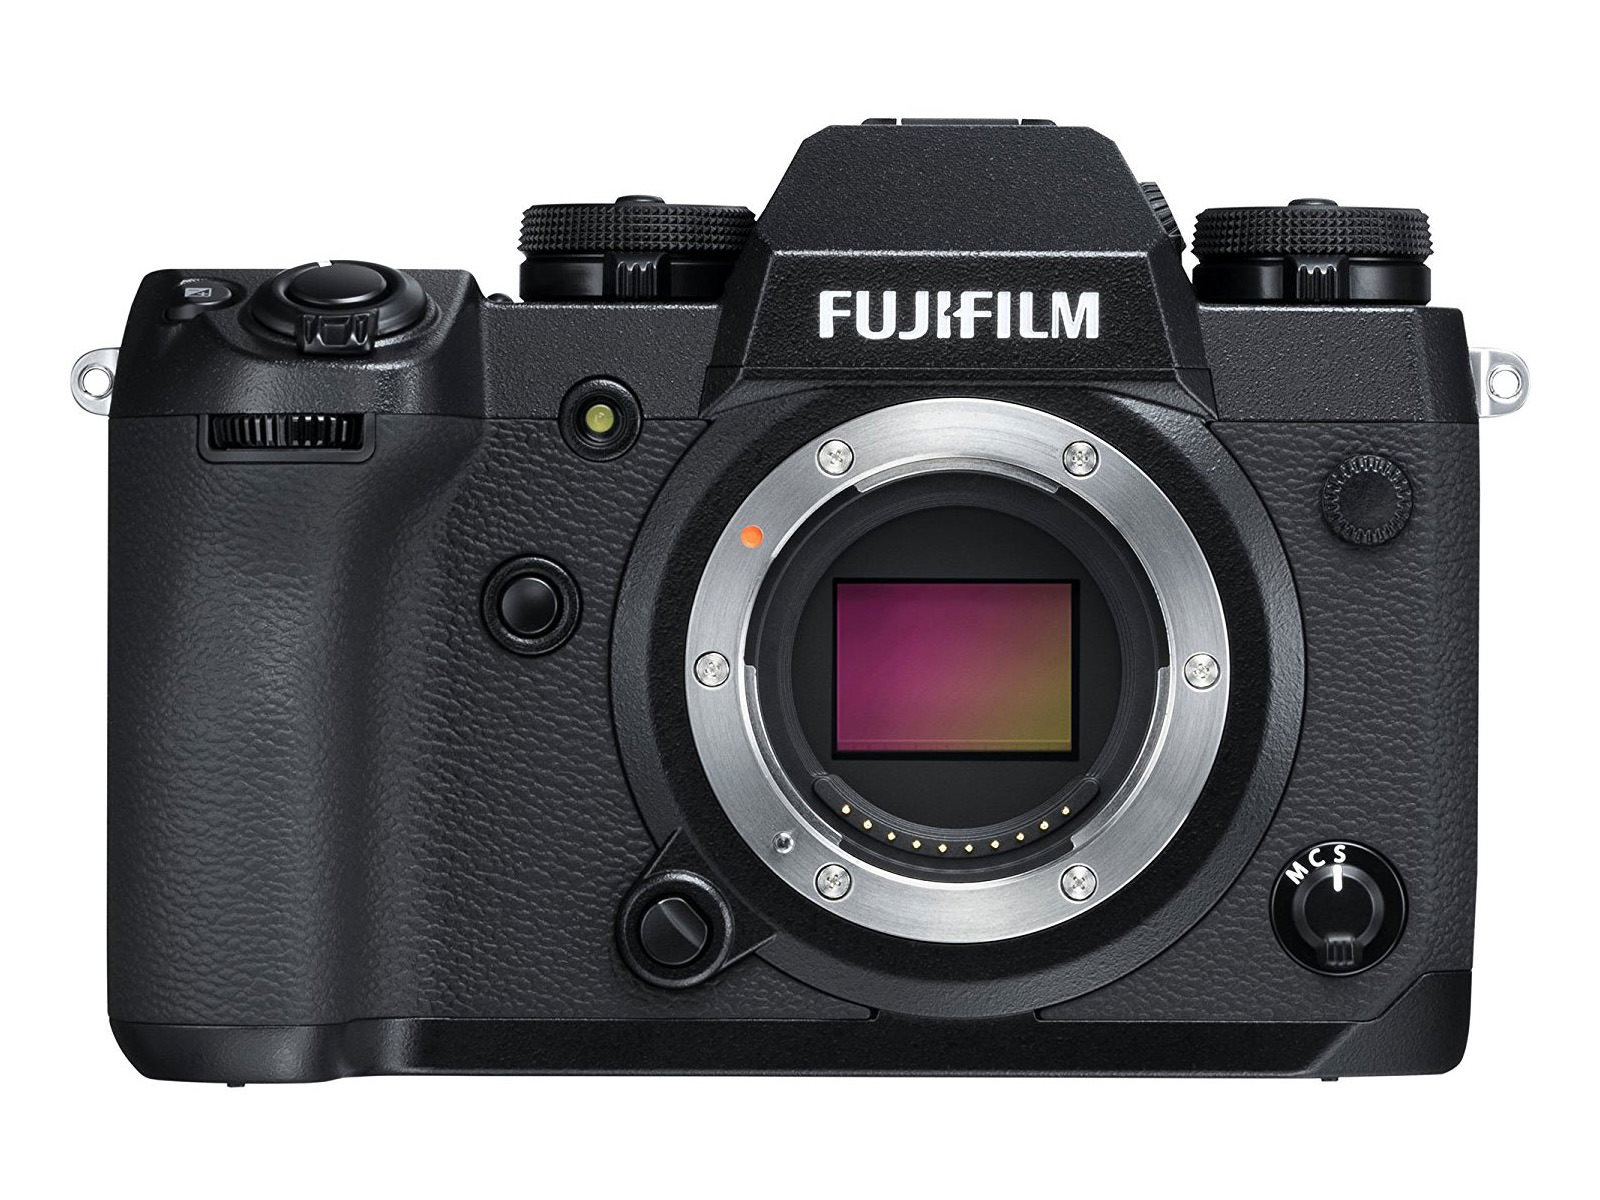 Meine Gedanken zur Fujifilm X-H1